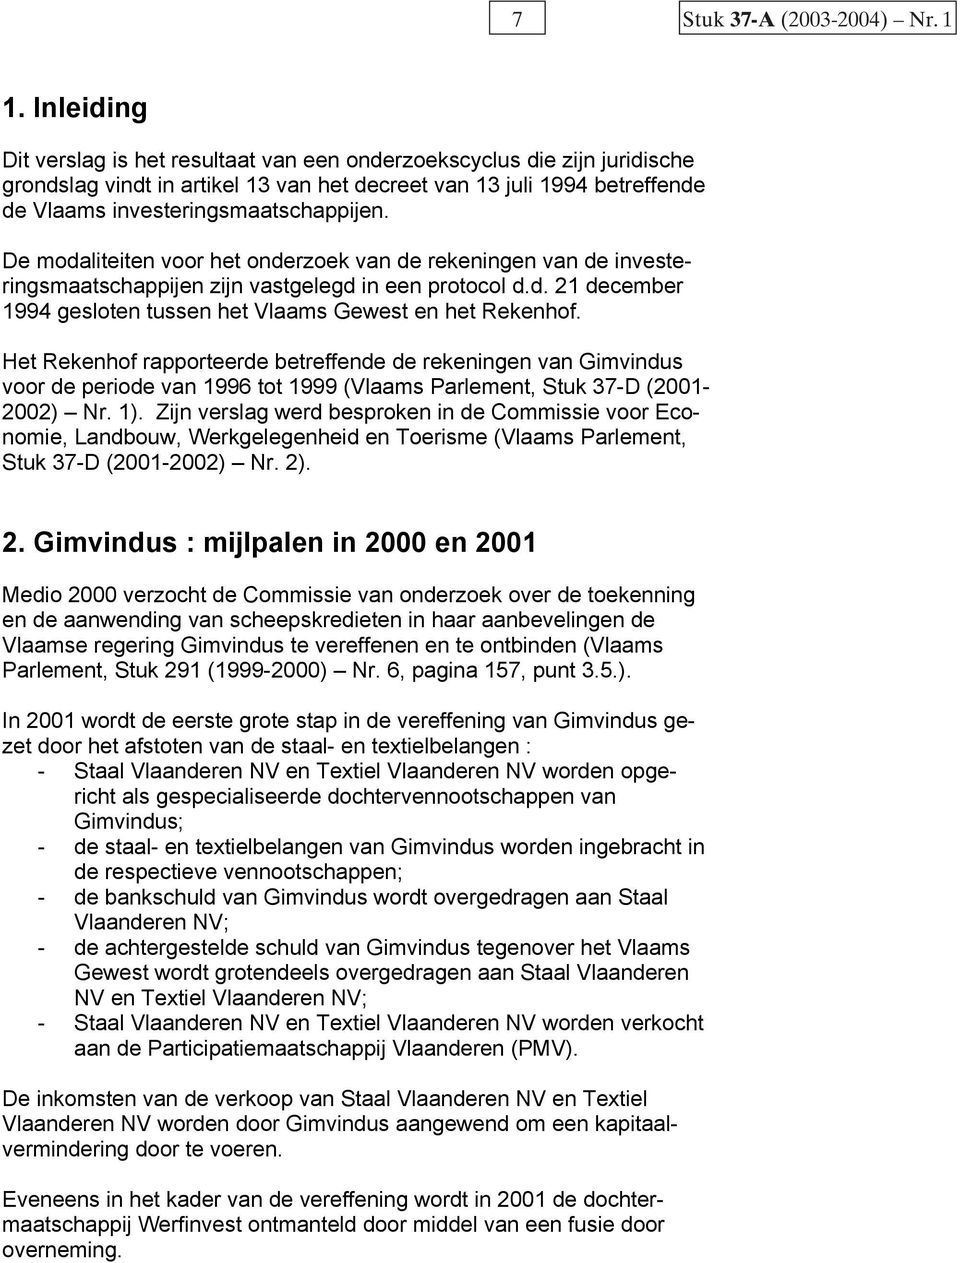 De modaliteiten voor het onderzoek van de rekeningen van de investeringsmaatschappijen zijn vastgelegd in een protocol d.d. 21 december 1994 gesloten tussen het Vlaams Gewest en het Rekenhof.